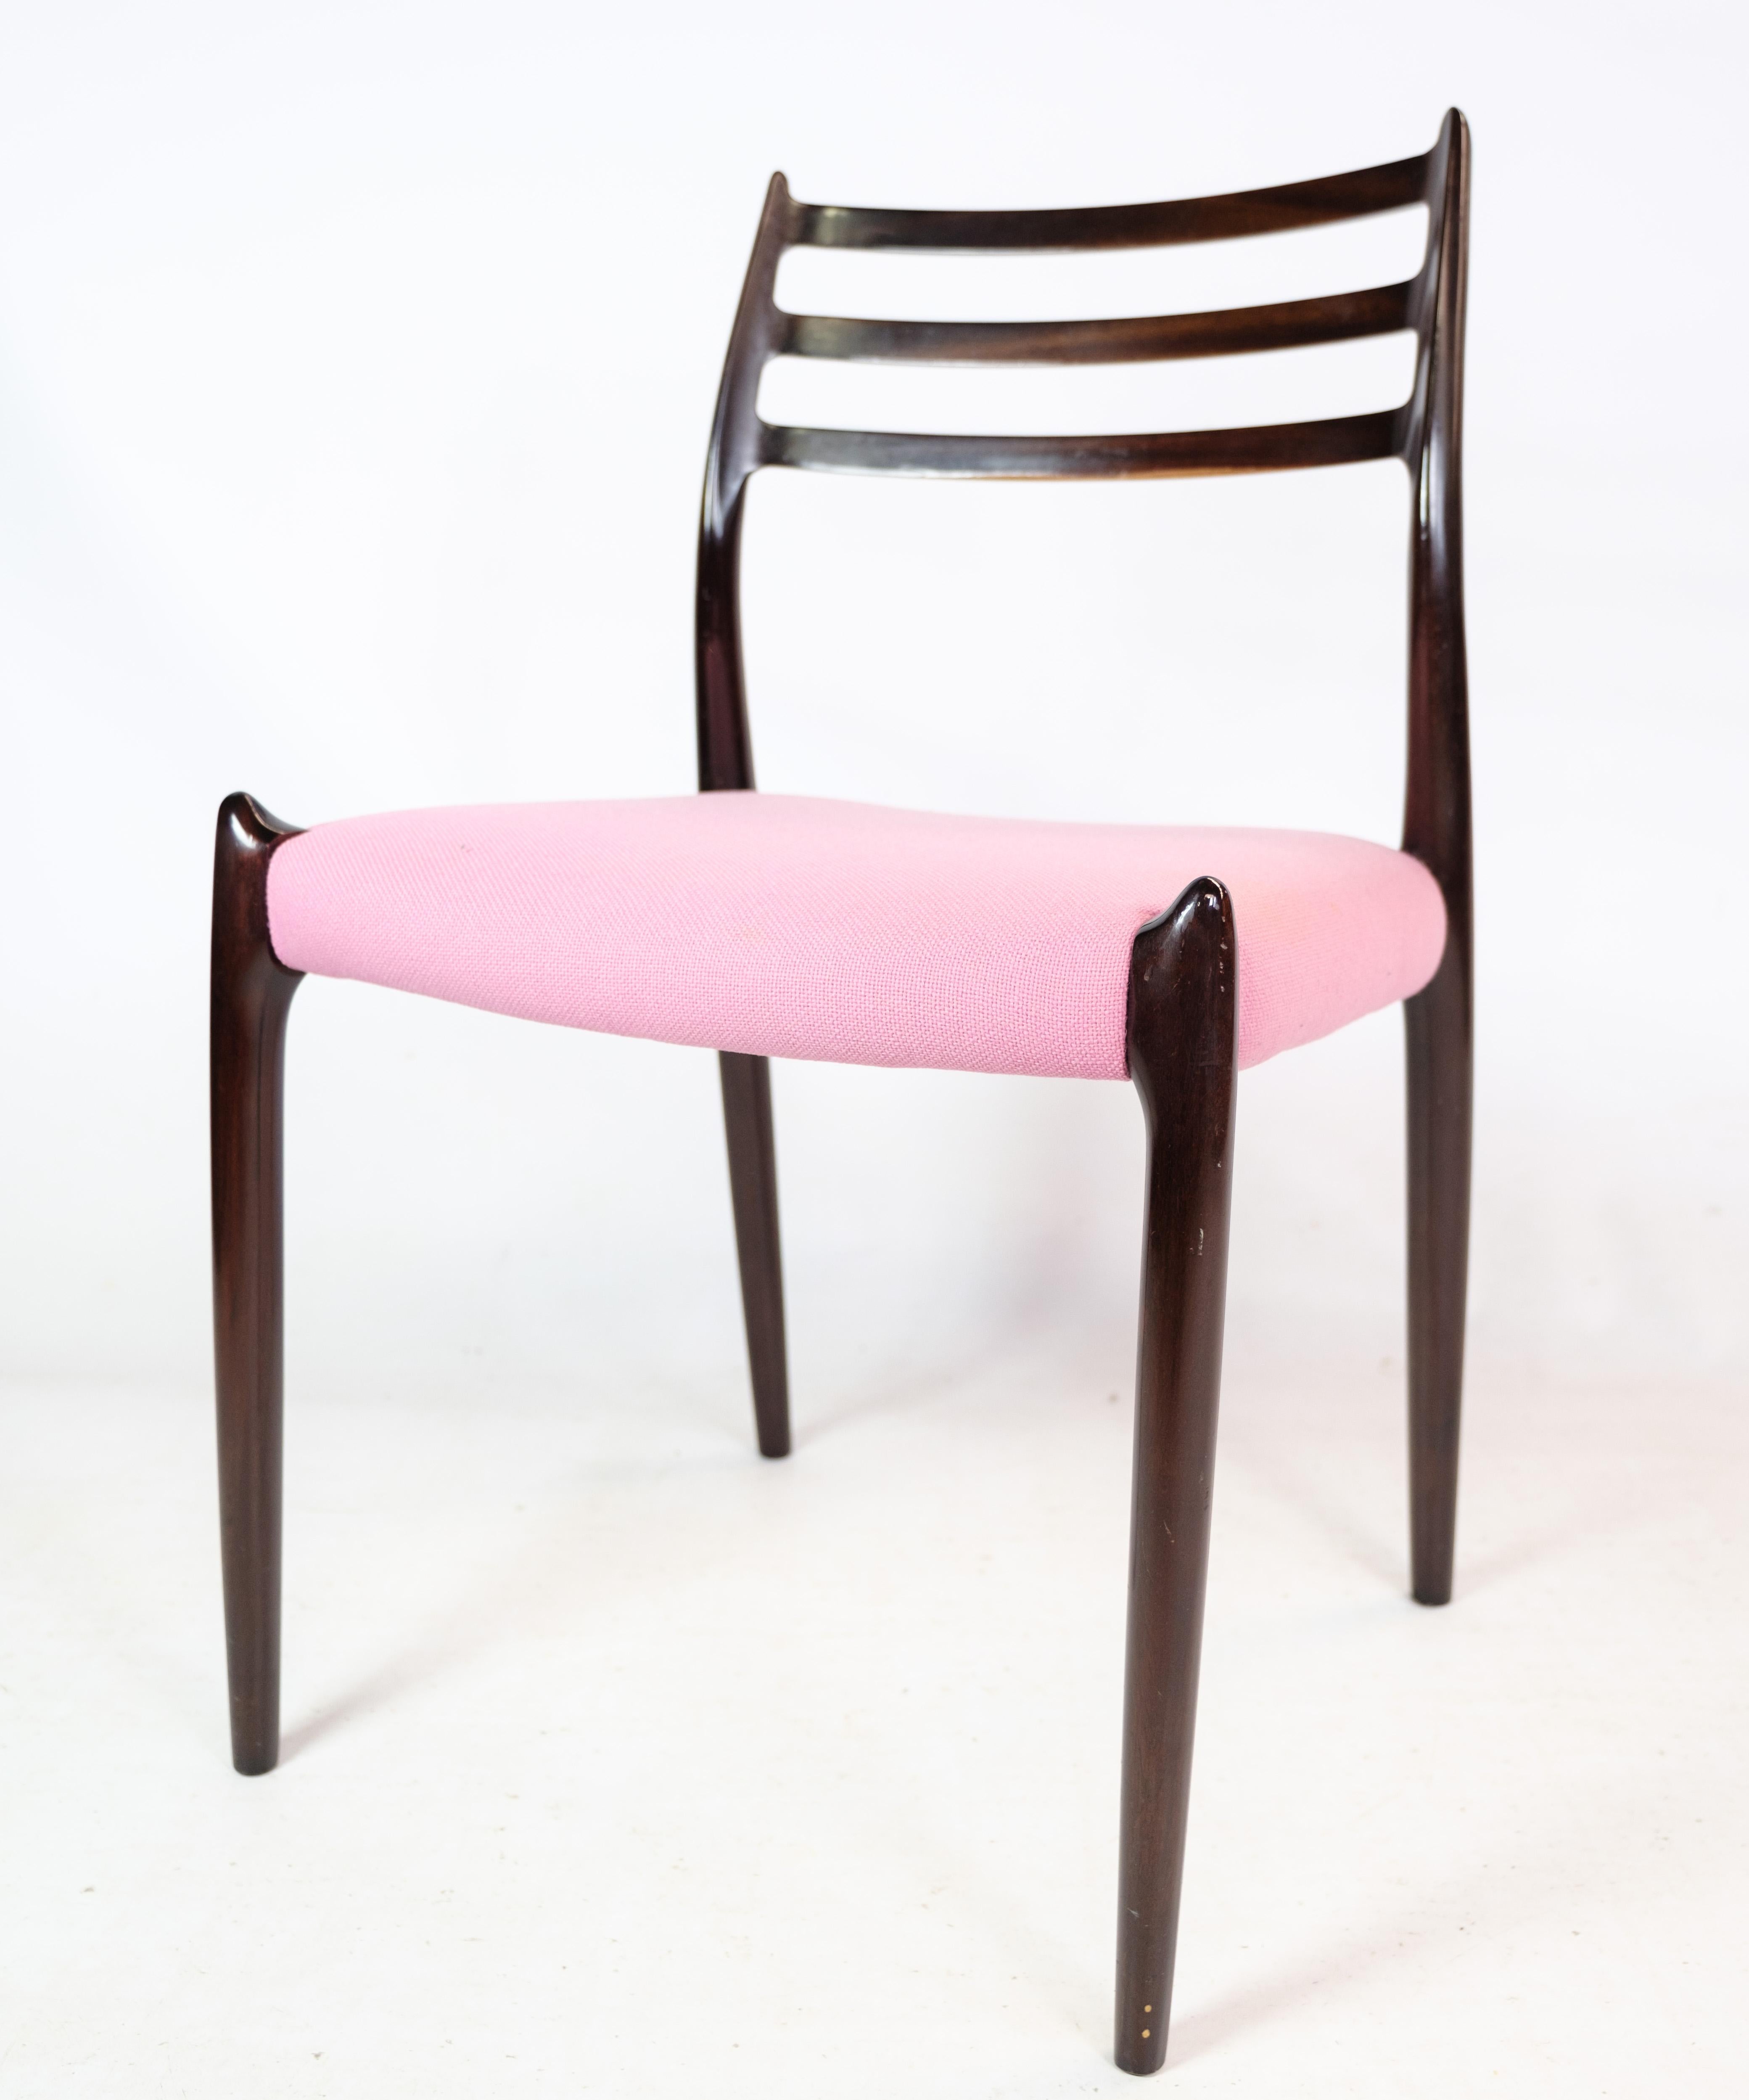 Esstischstühle aus Mahagoni, Modell 78, entworfen von N.O Møller und hergestellt von JL Møller. Gepolstert mit rosafarbenem Stoff, der sich in einem sehr guten gebrauchten Zustand befindet. Wir haben eine professionelle Werkstatt, so dass wir, falls